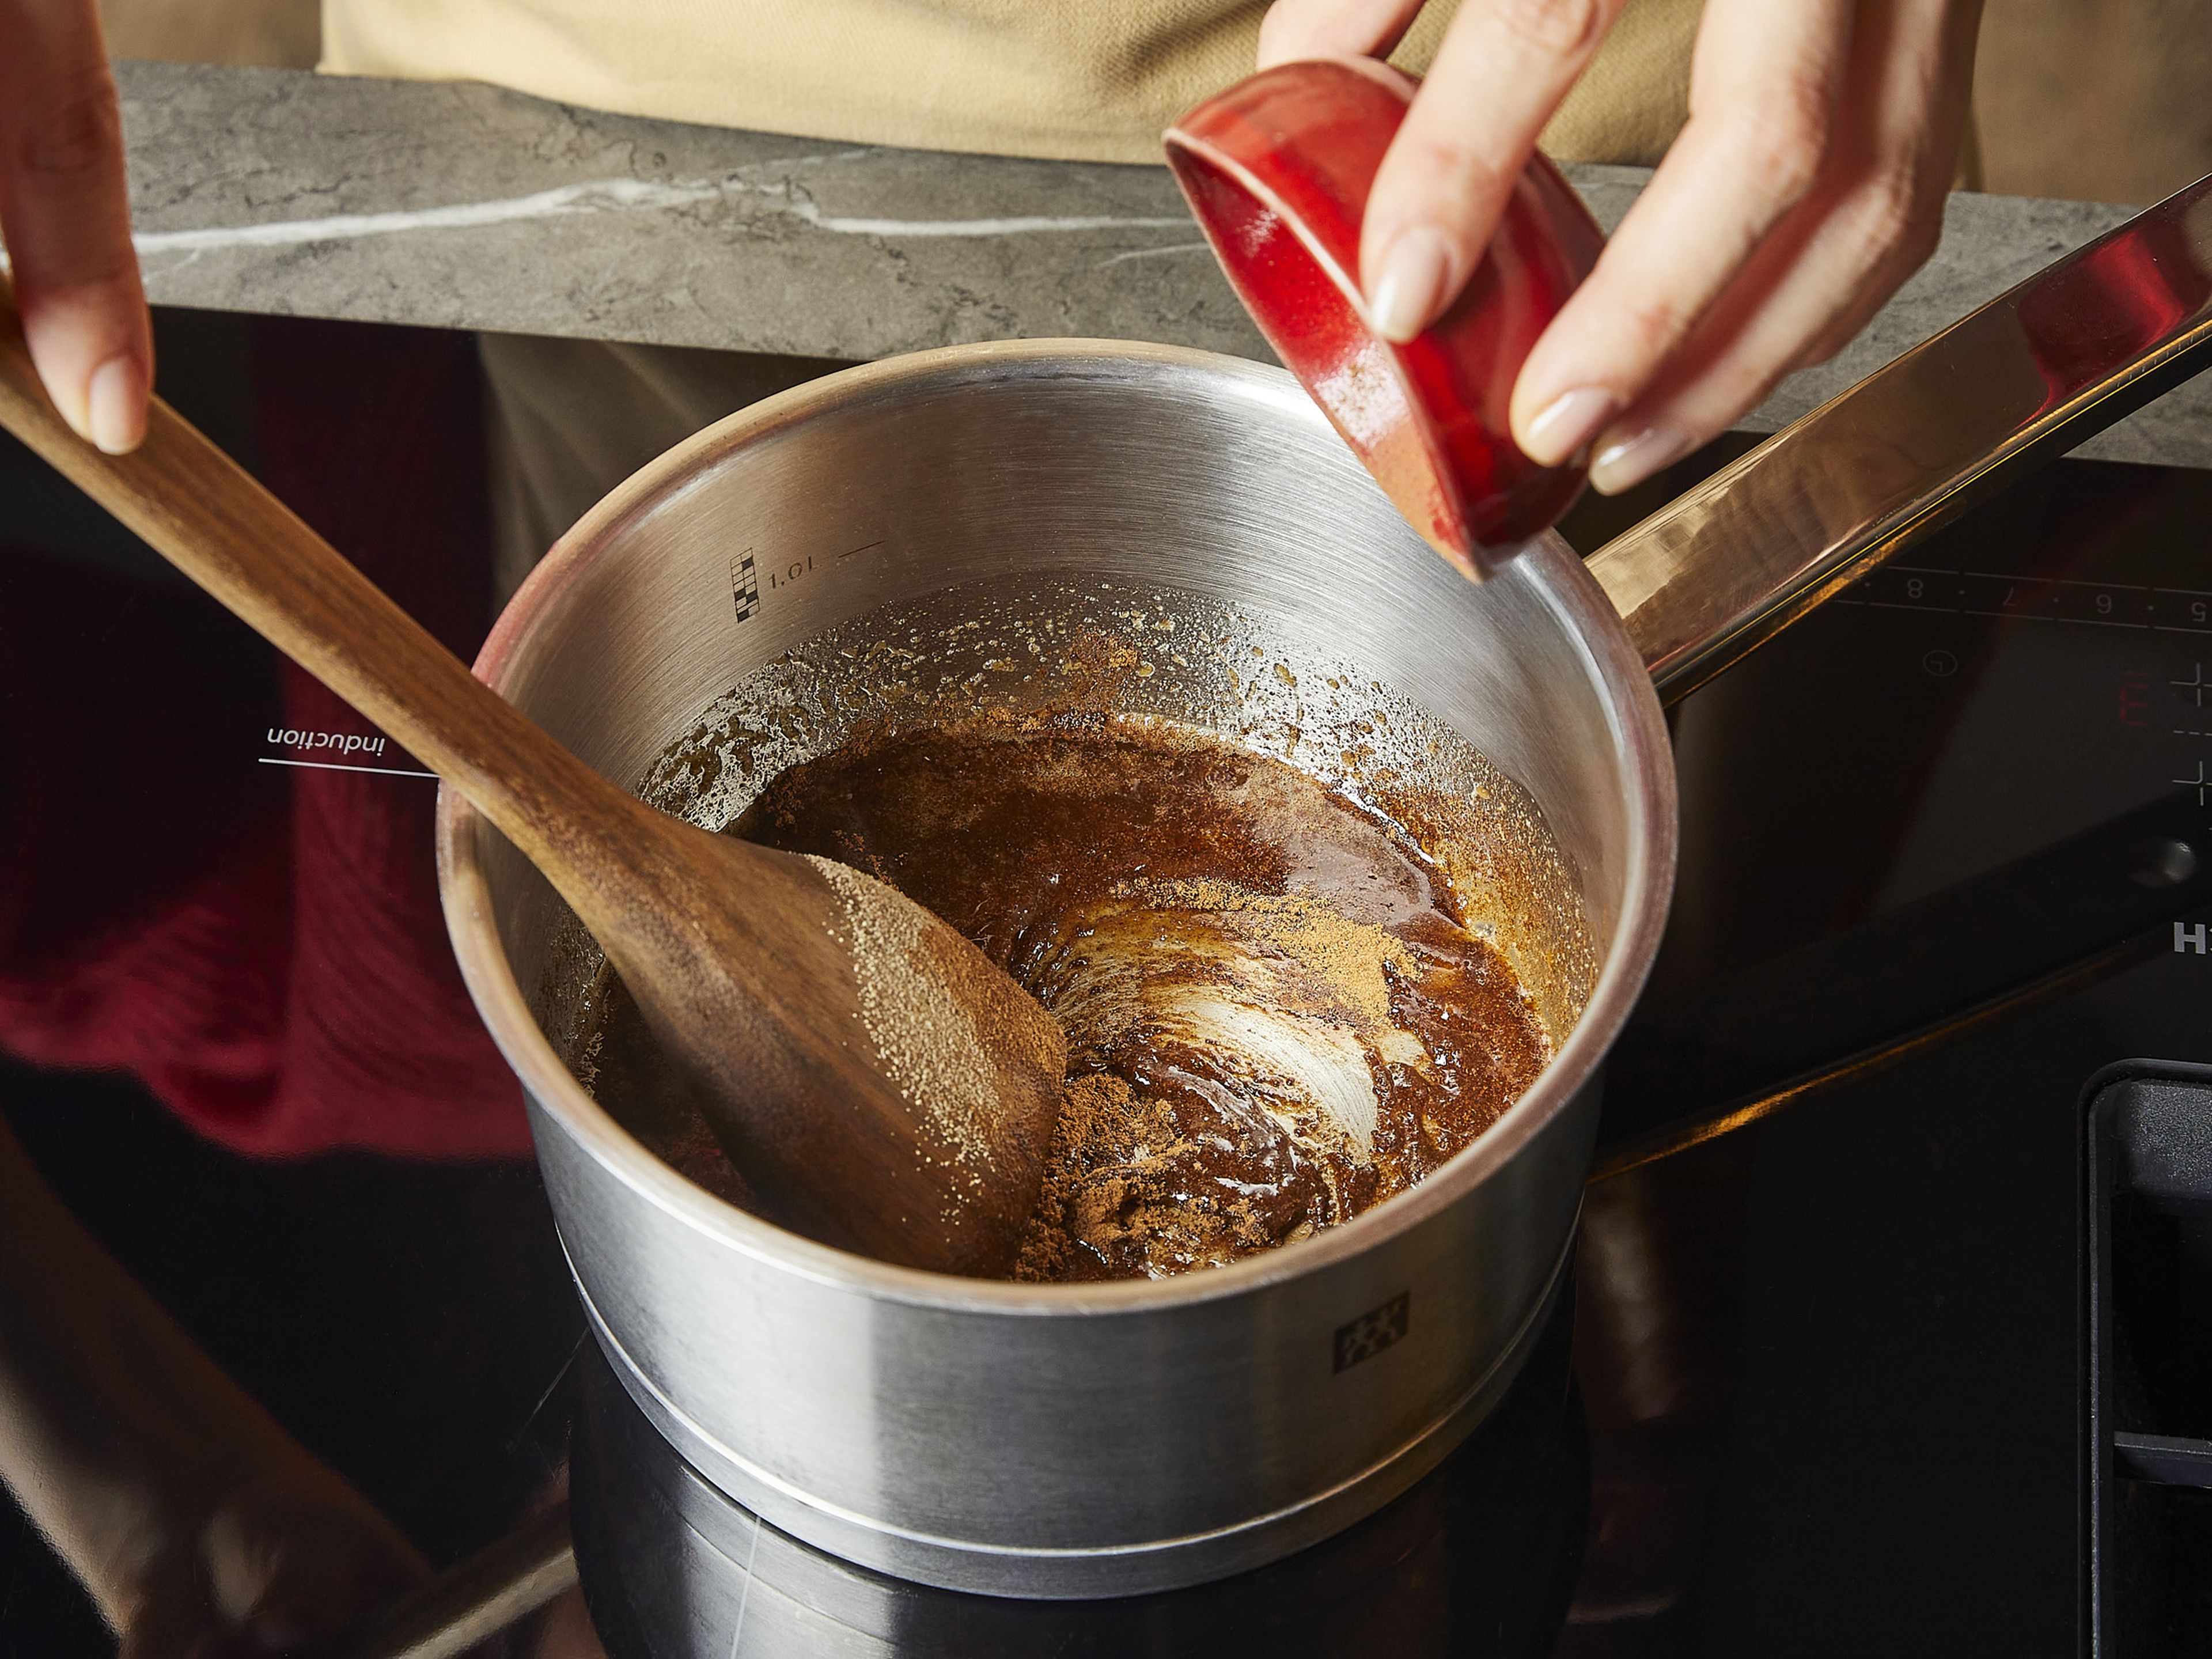 Ofen auf 200°C vorheizen. Währenddessen ⅖ der Butter in einem kleinen Topf schmelzen, dann mit Zucker und Zimt vermischen. Mit einer Prise Salz würzen und noch einmal kurz aufkochen lassen, bis sich der Zucker fast aufgelöst hat.